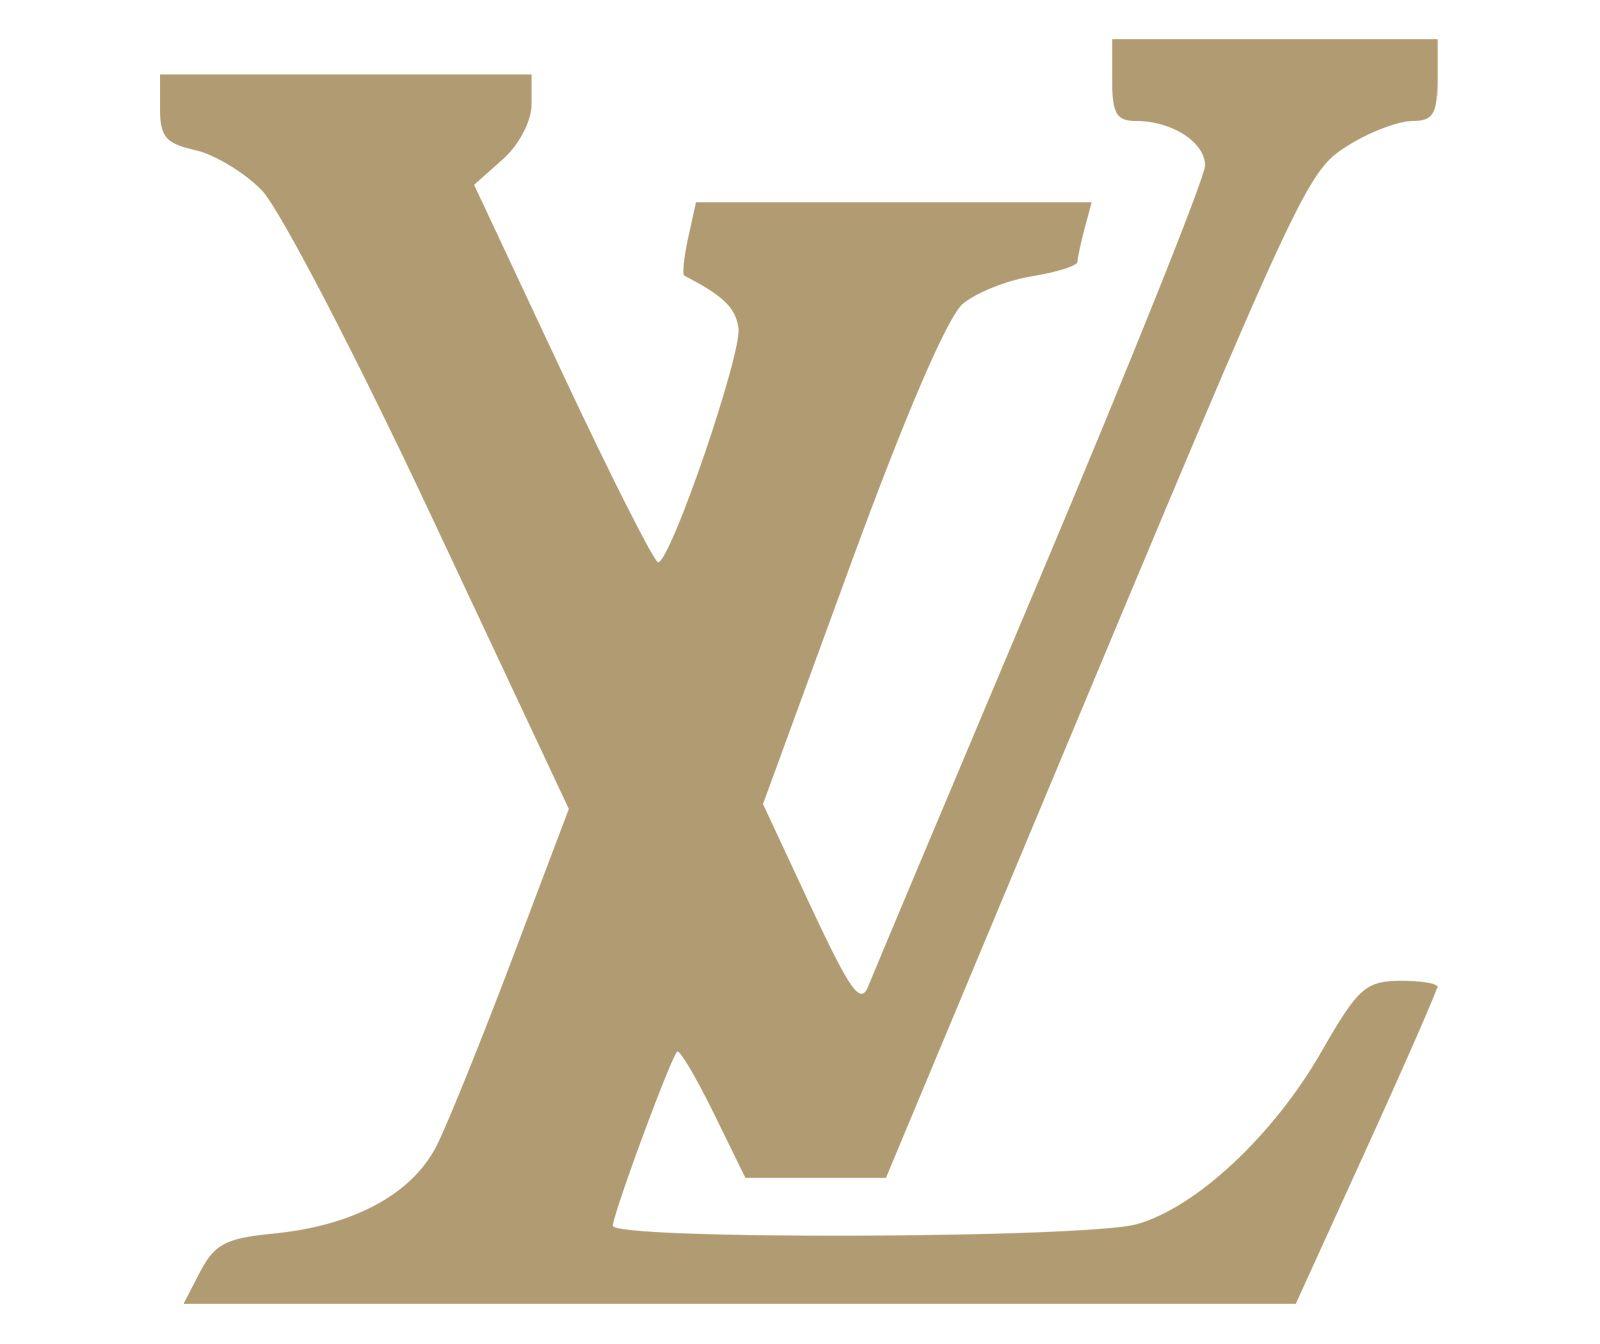 Red Lui Vittonlogo Logo - Louis vuitton Logos